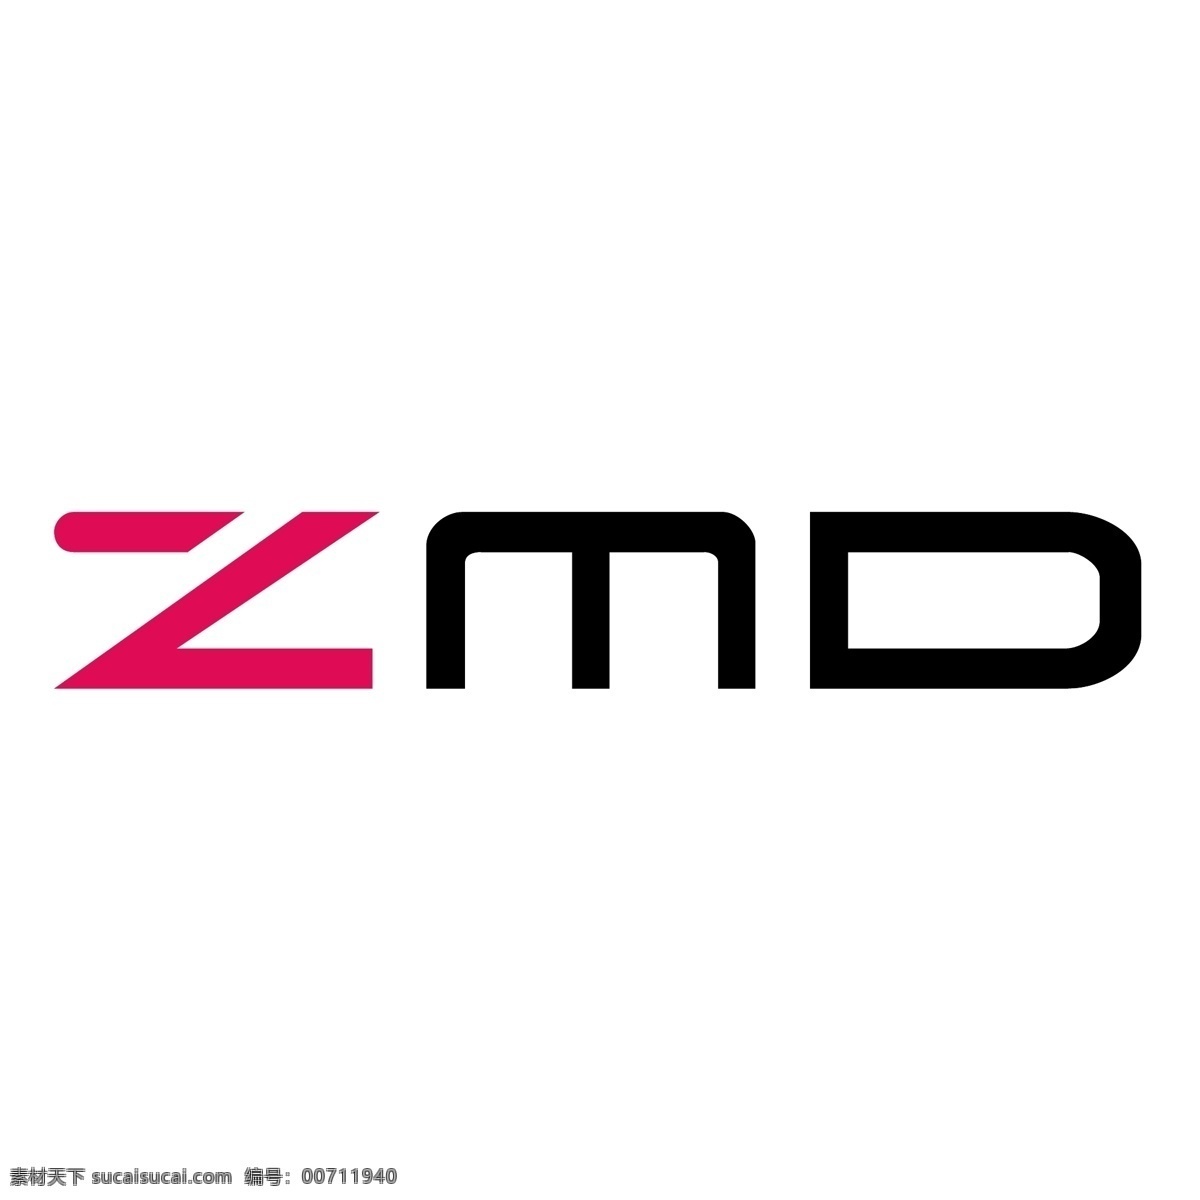 zmd zmd标志 标识为免费 白色